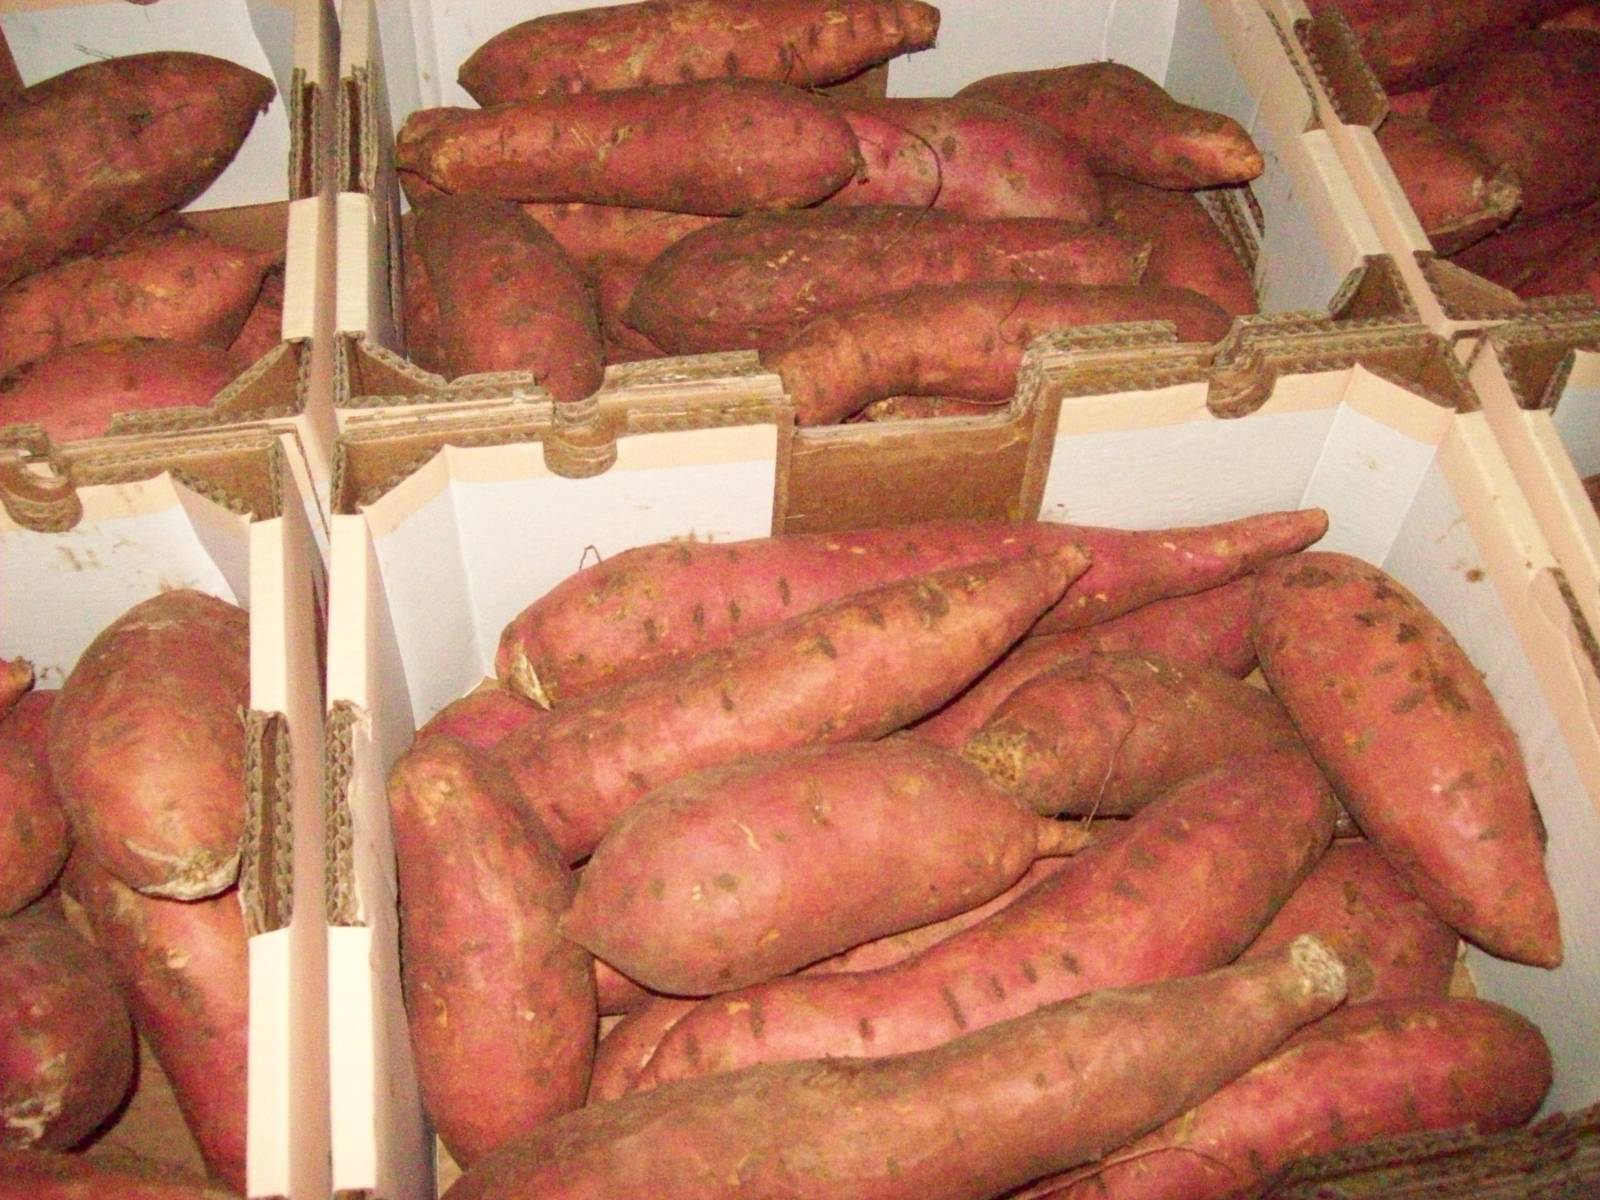 Сладкий картофель батат - выращивание, посадка, размножение